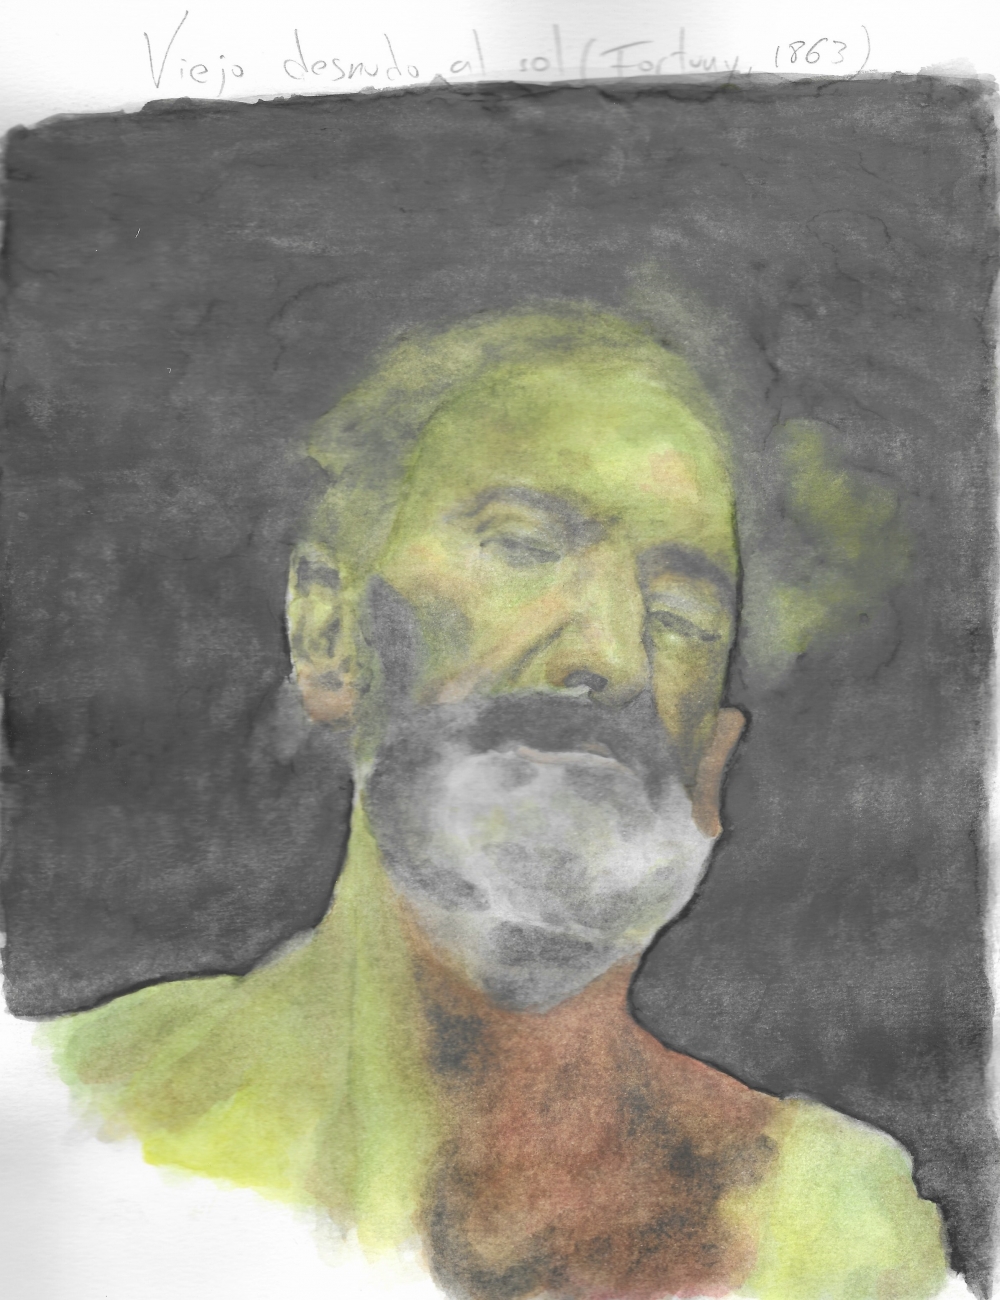 Viejo desnudo al sol (Fortuny, 1863)